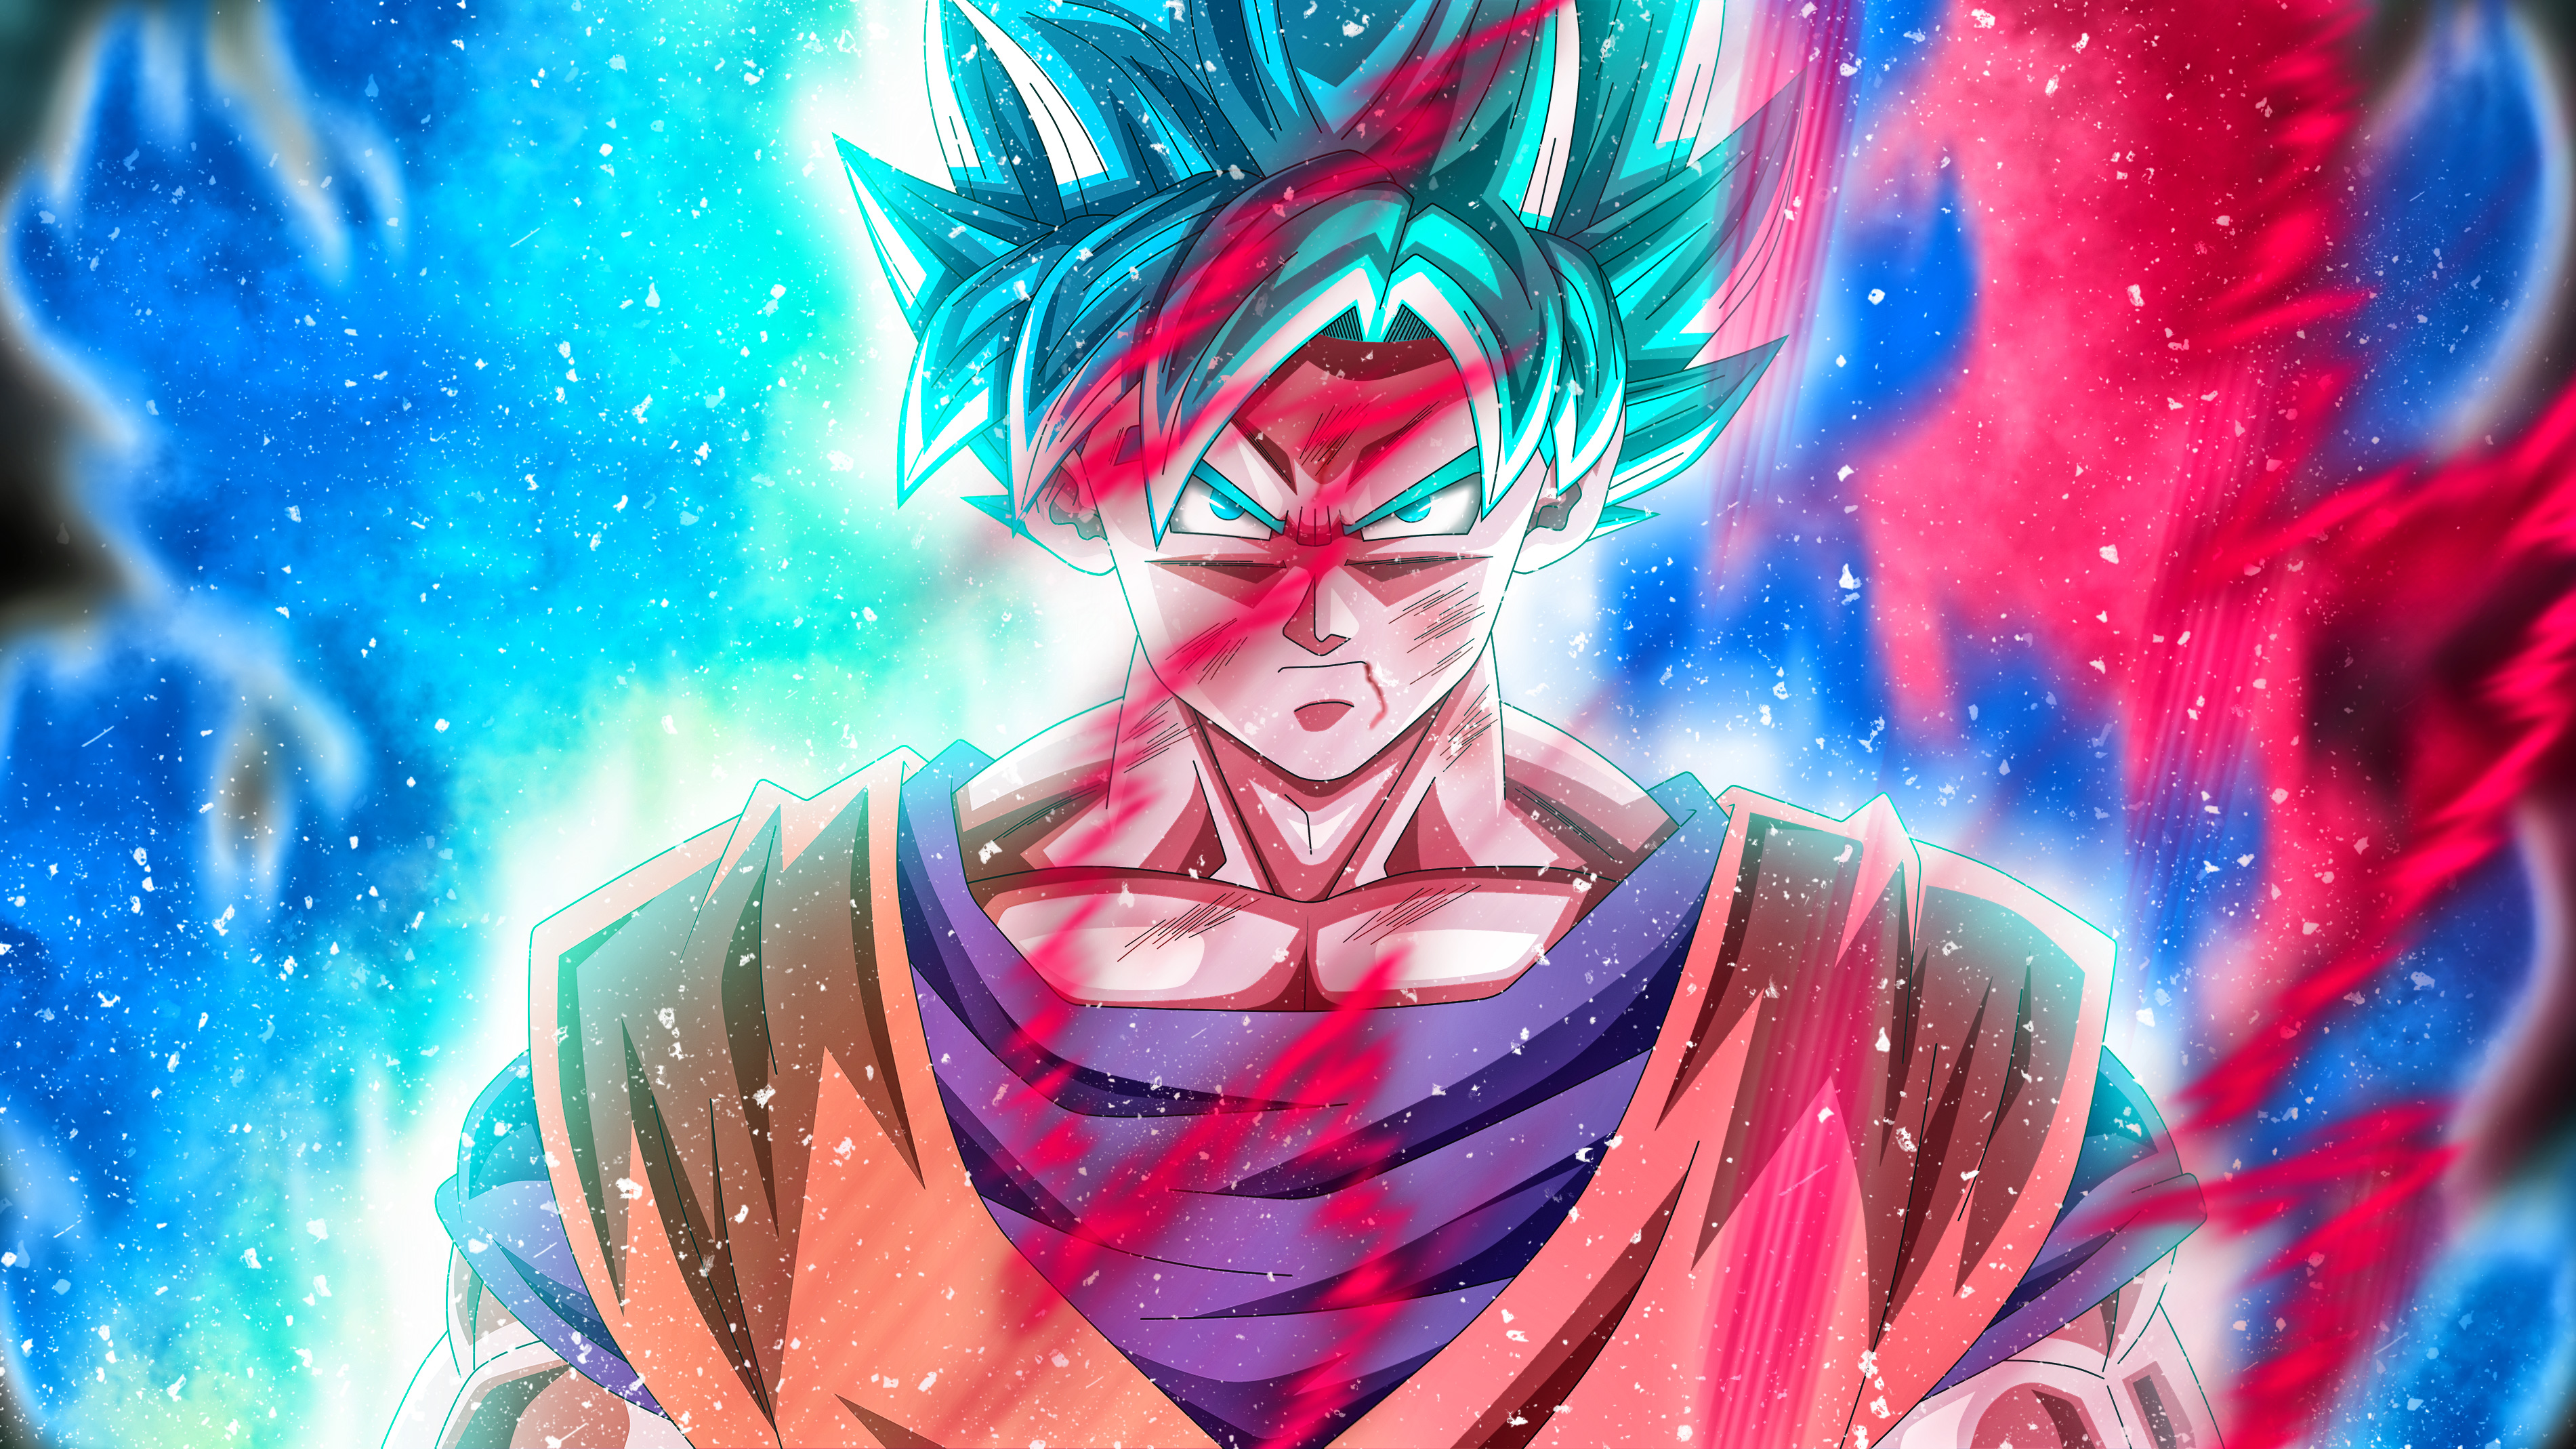 Goku Super Saiyan Blue de Dragon Ball Super Anime Fondo de pantalla ID:4547